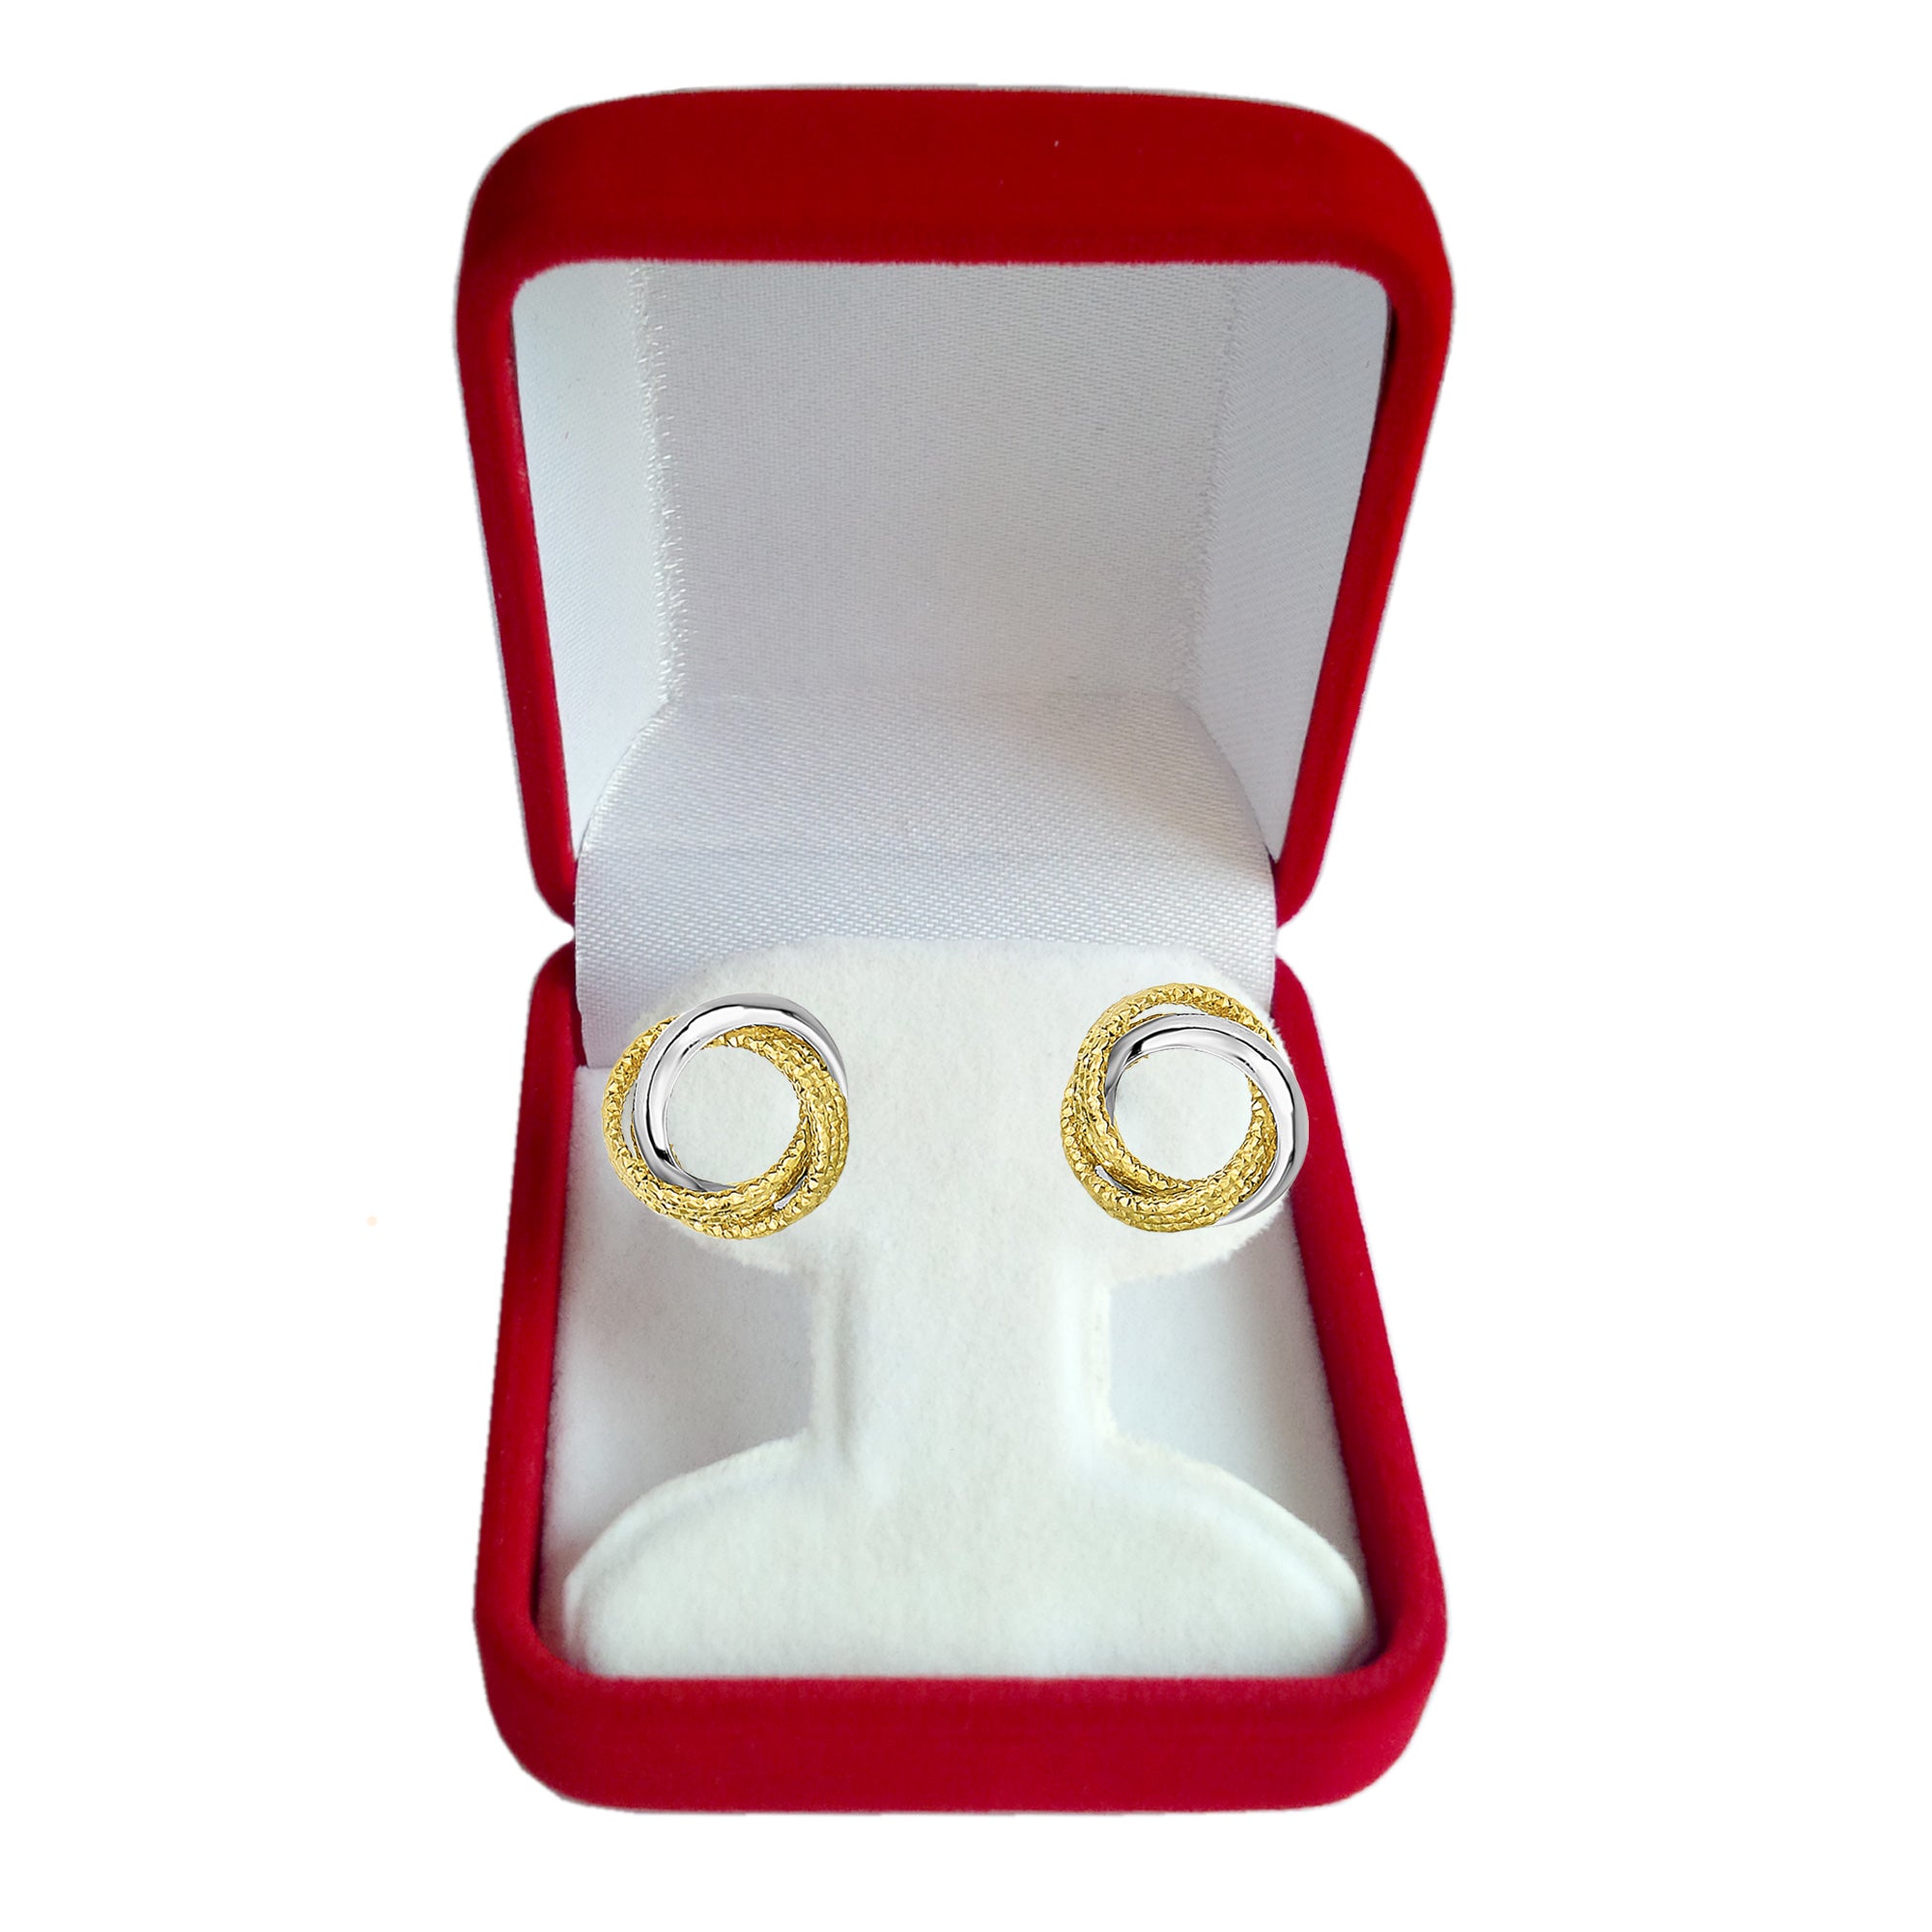 14 karat tofarget gull med skinnende og teksturert åpen uendelig knute øredobber, 10 mm fine designersmykker for menn og kvinner